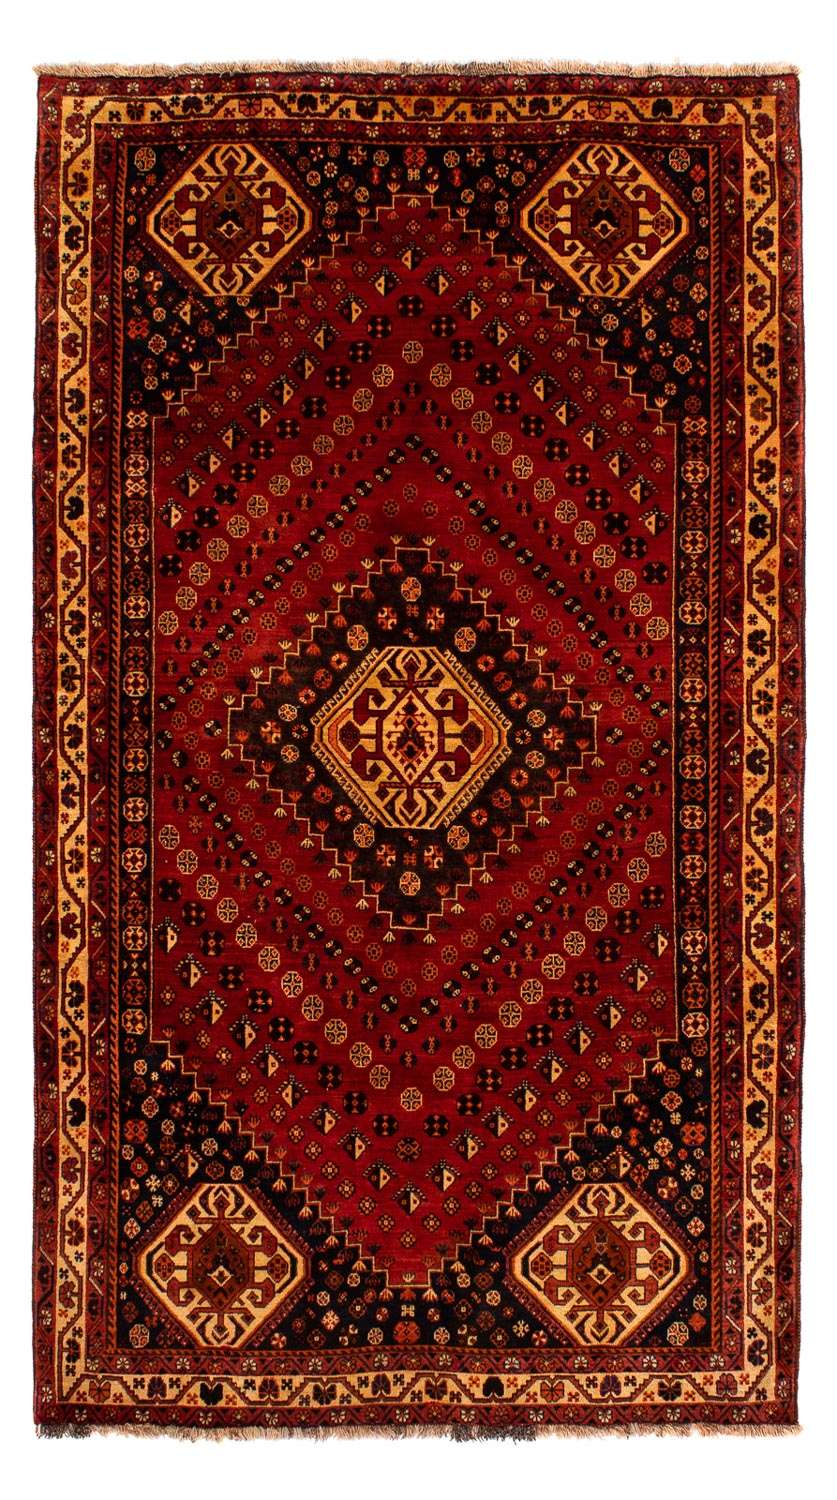 Alfombra persa - Nómada - 290 x 173 cm - rojo oscuro